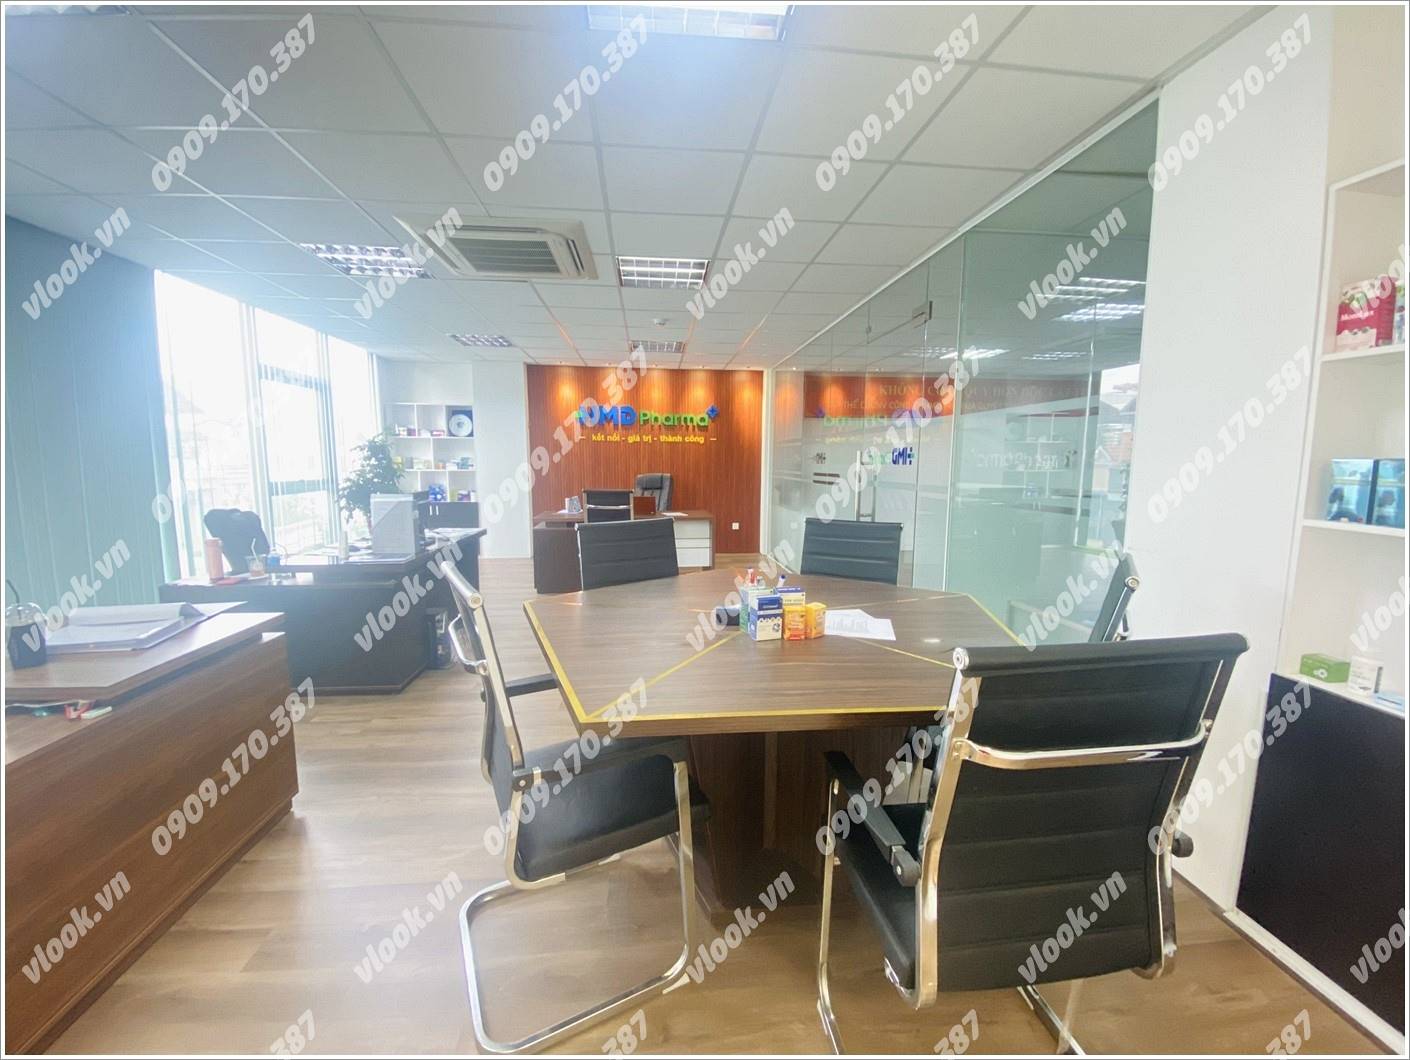 Cao ốc văn phòng cho thuê toà nhà Head Building, Sông Thao, Phường 2, Quận Tân Bình, TPHCM - vlook.vn